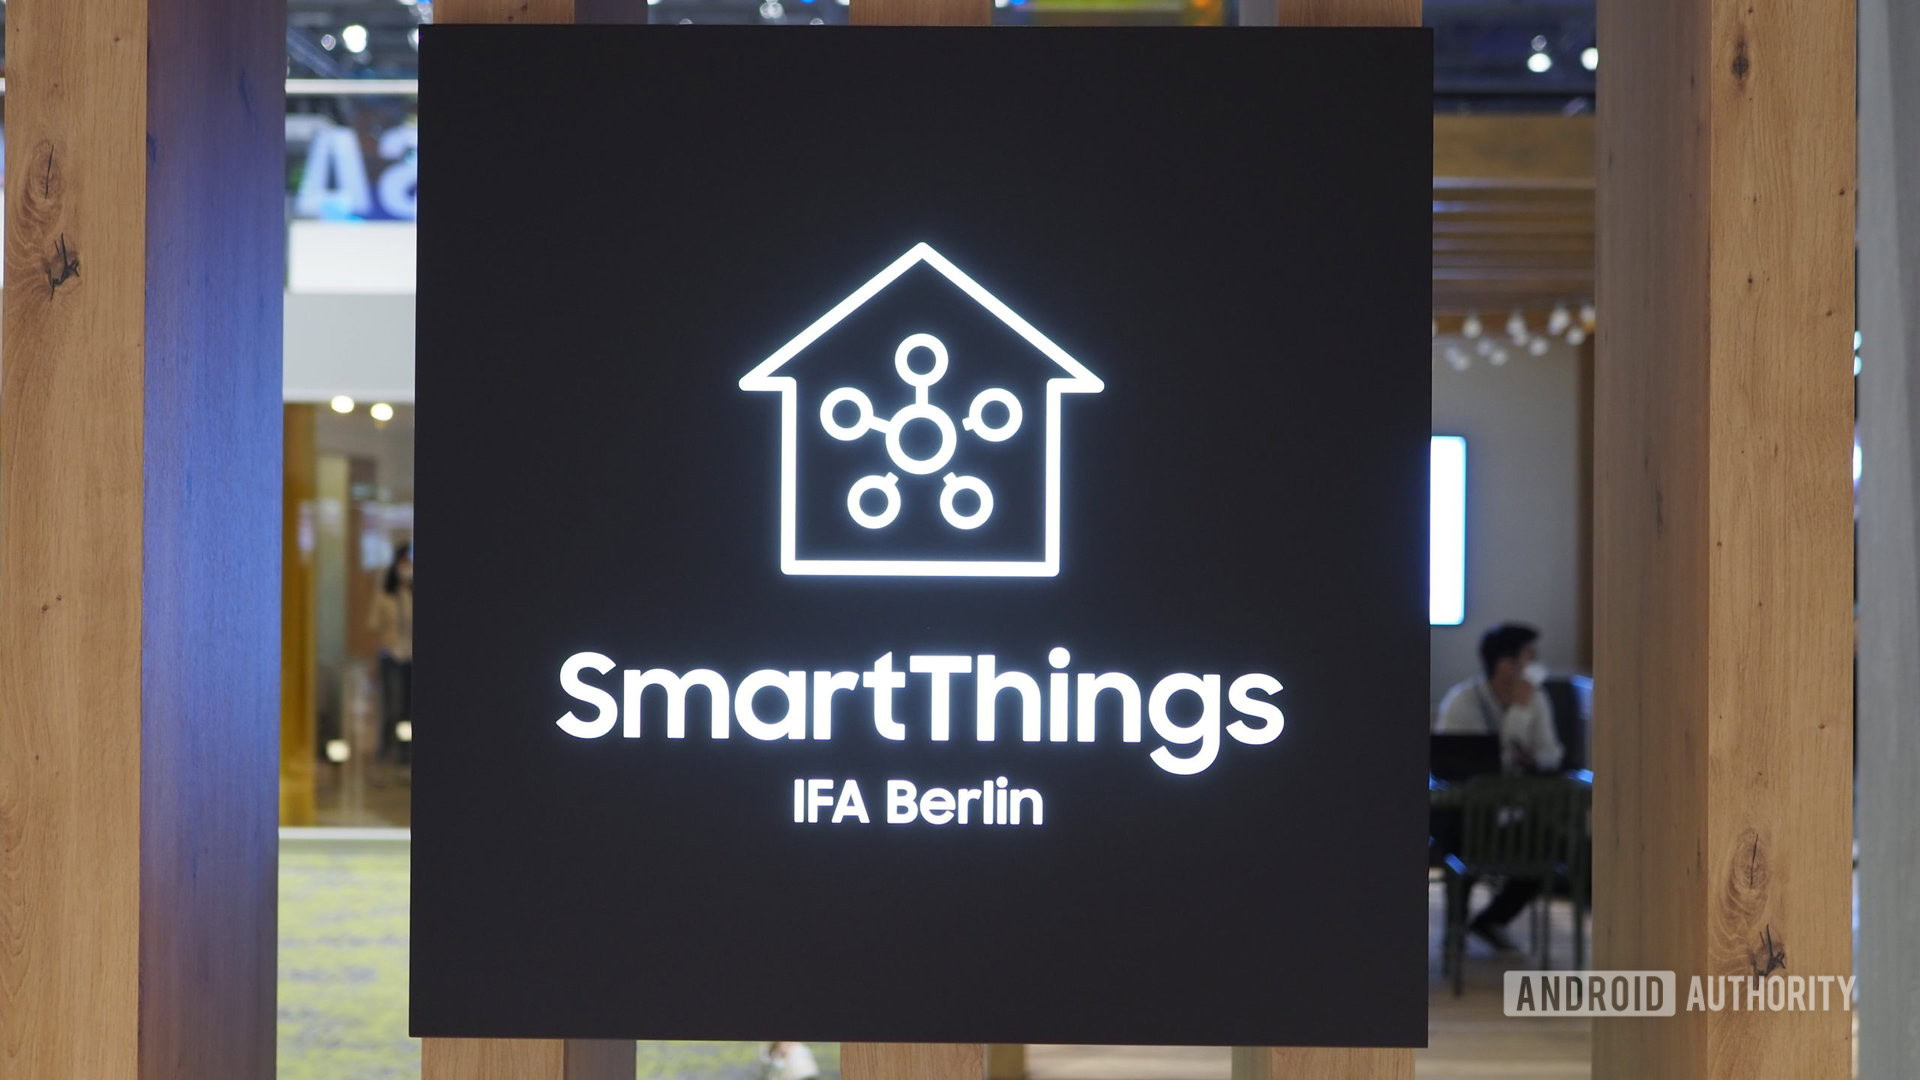 samsung smart home logo